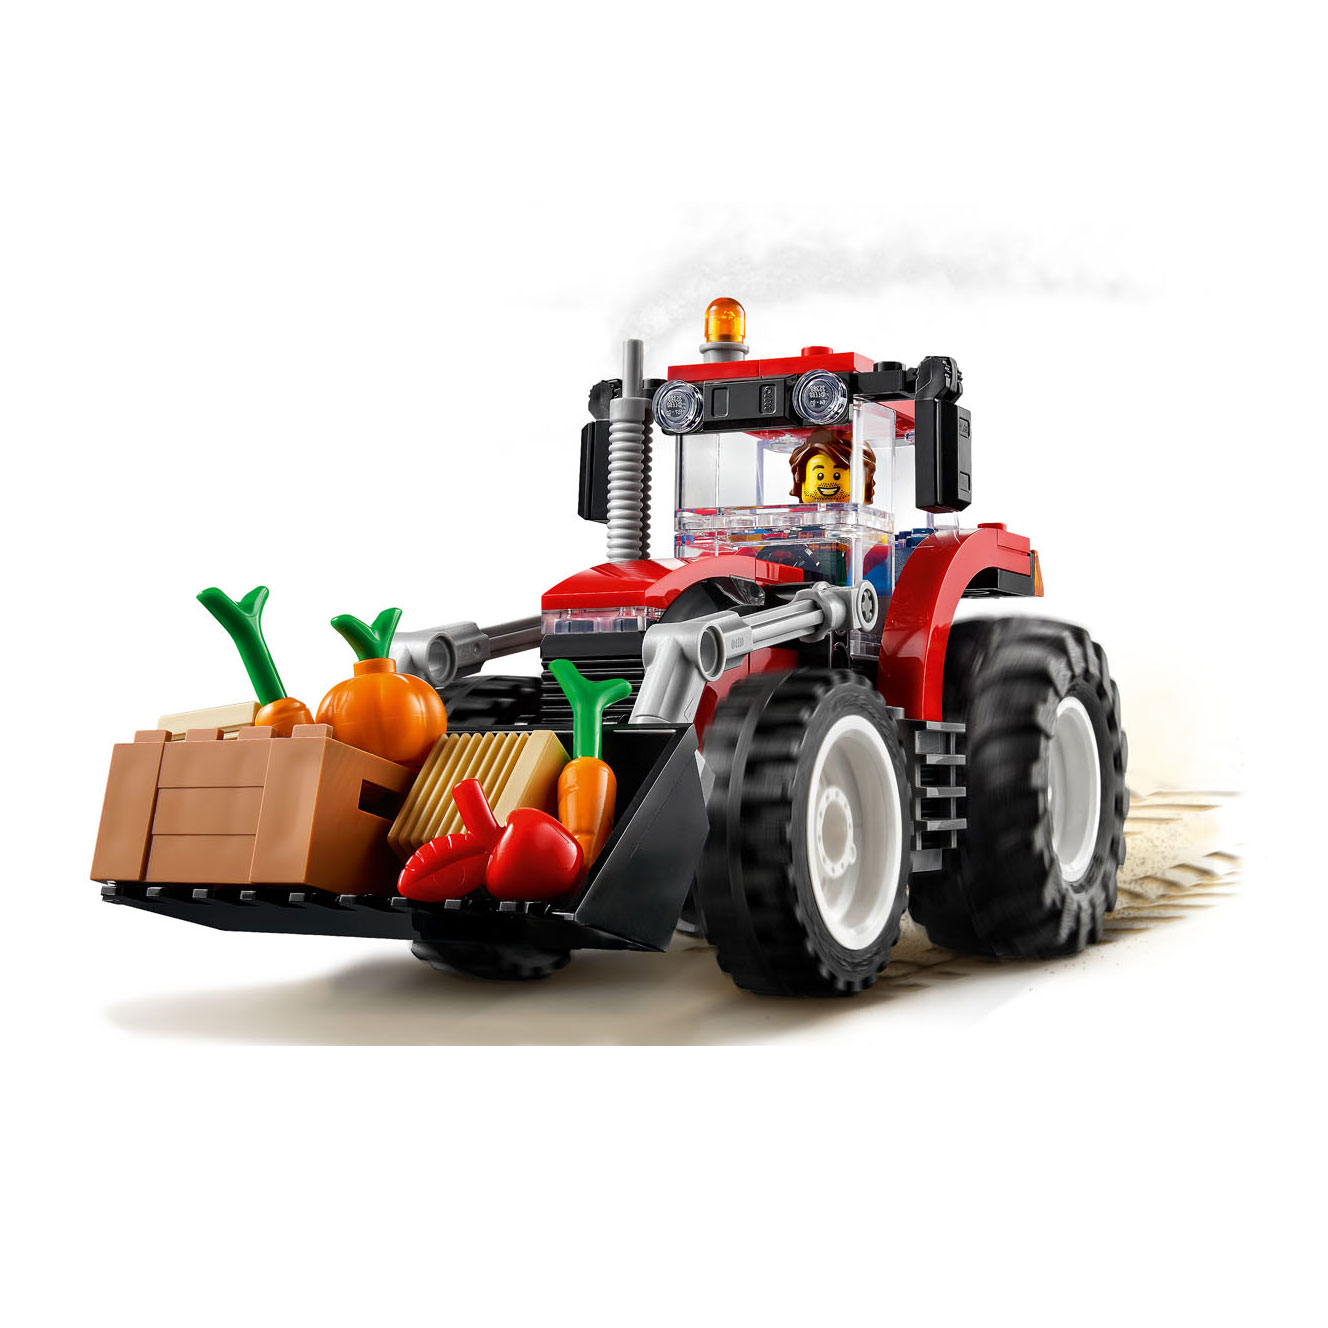 LEGO City 60287 Tractor